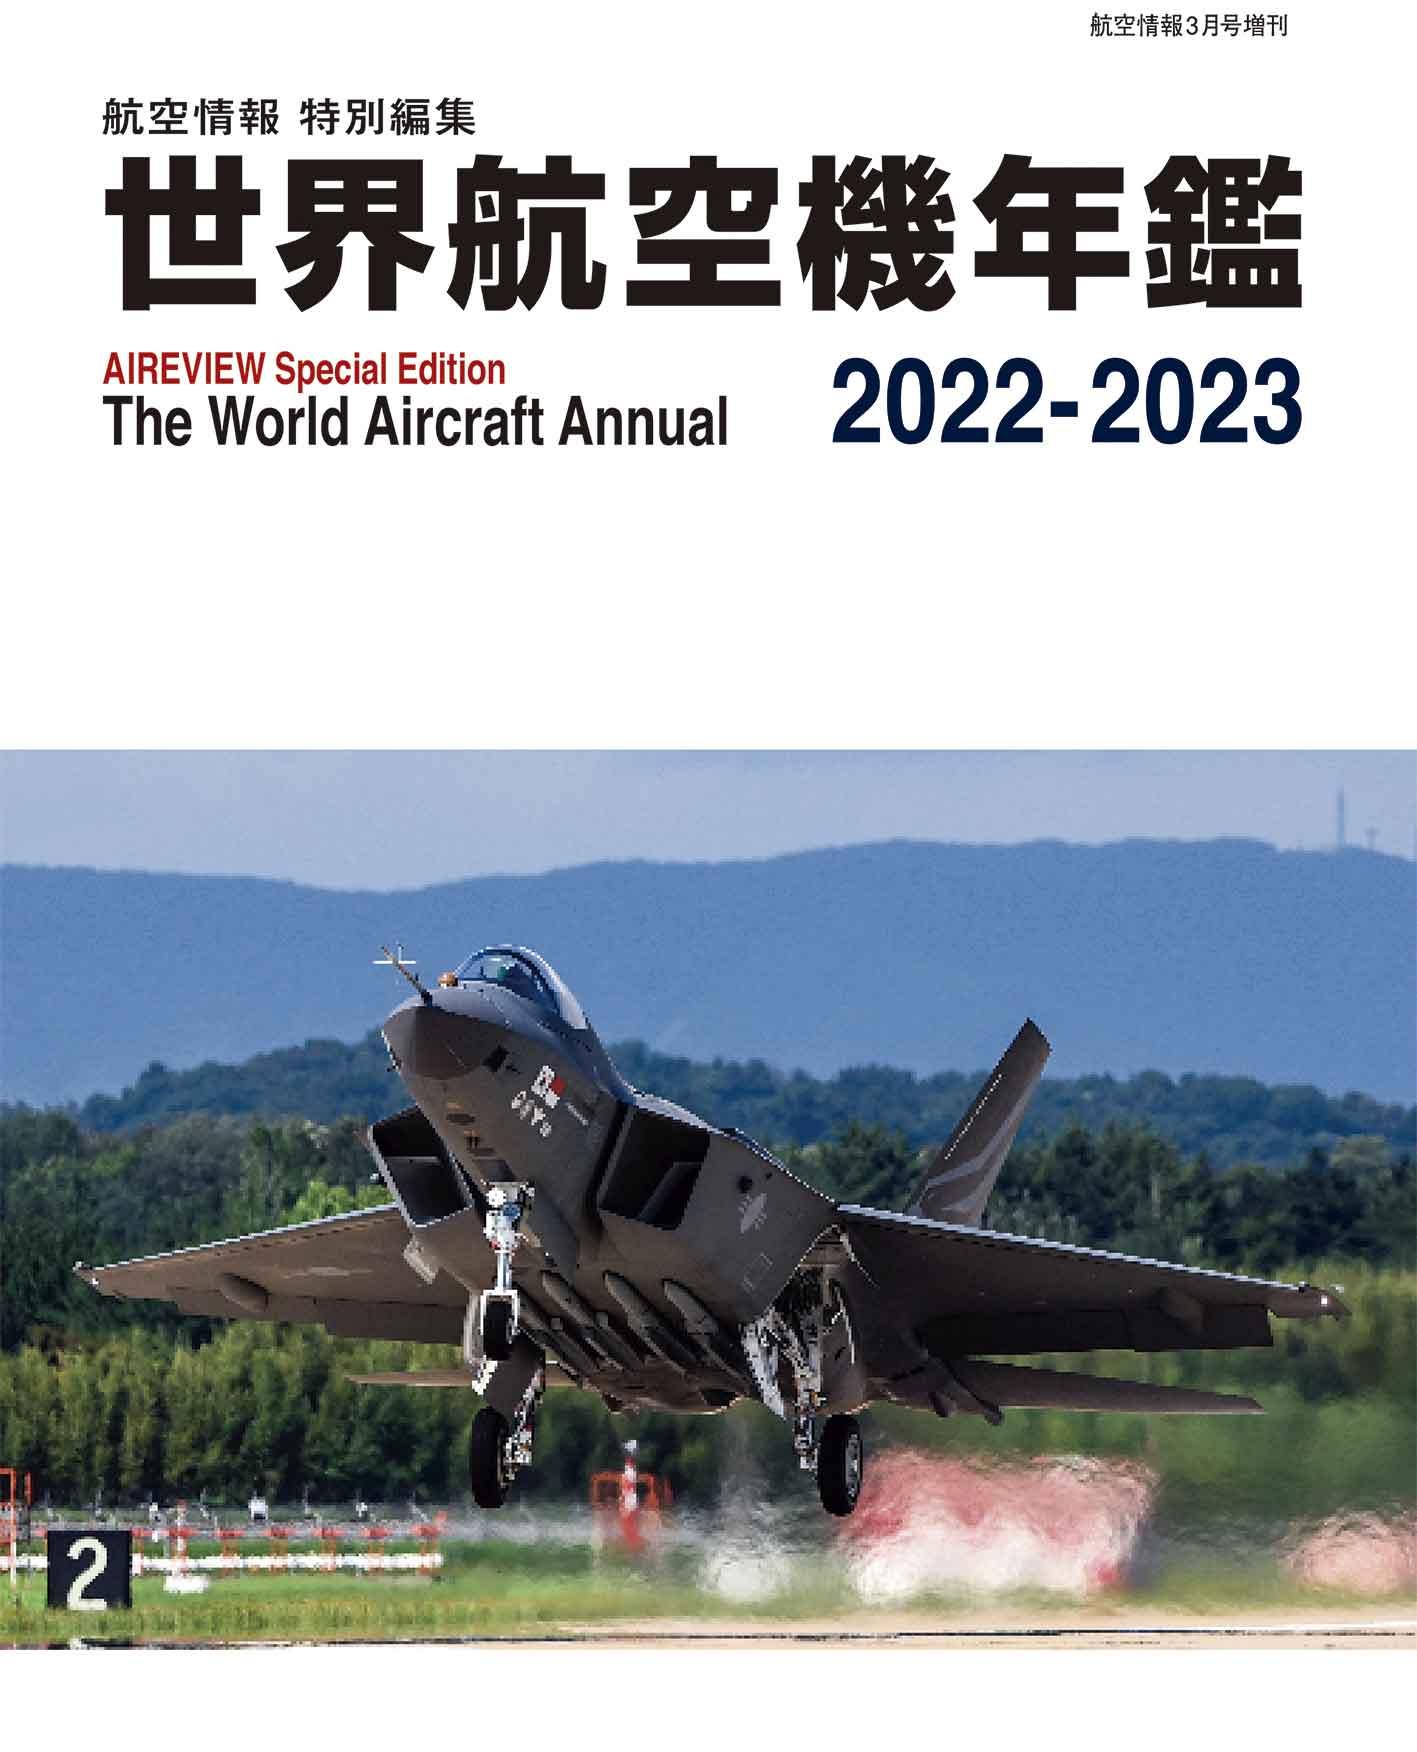 世界航空機年鑑2022〜2023年 発売のご案内。